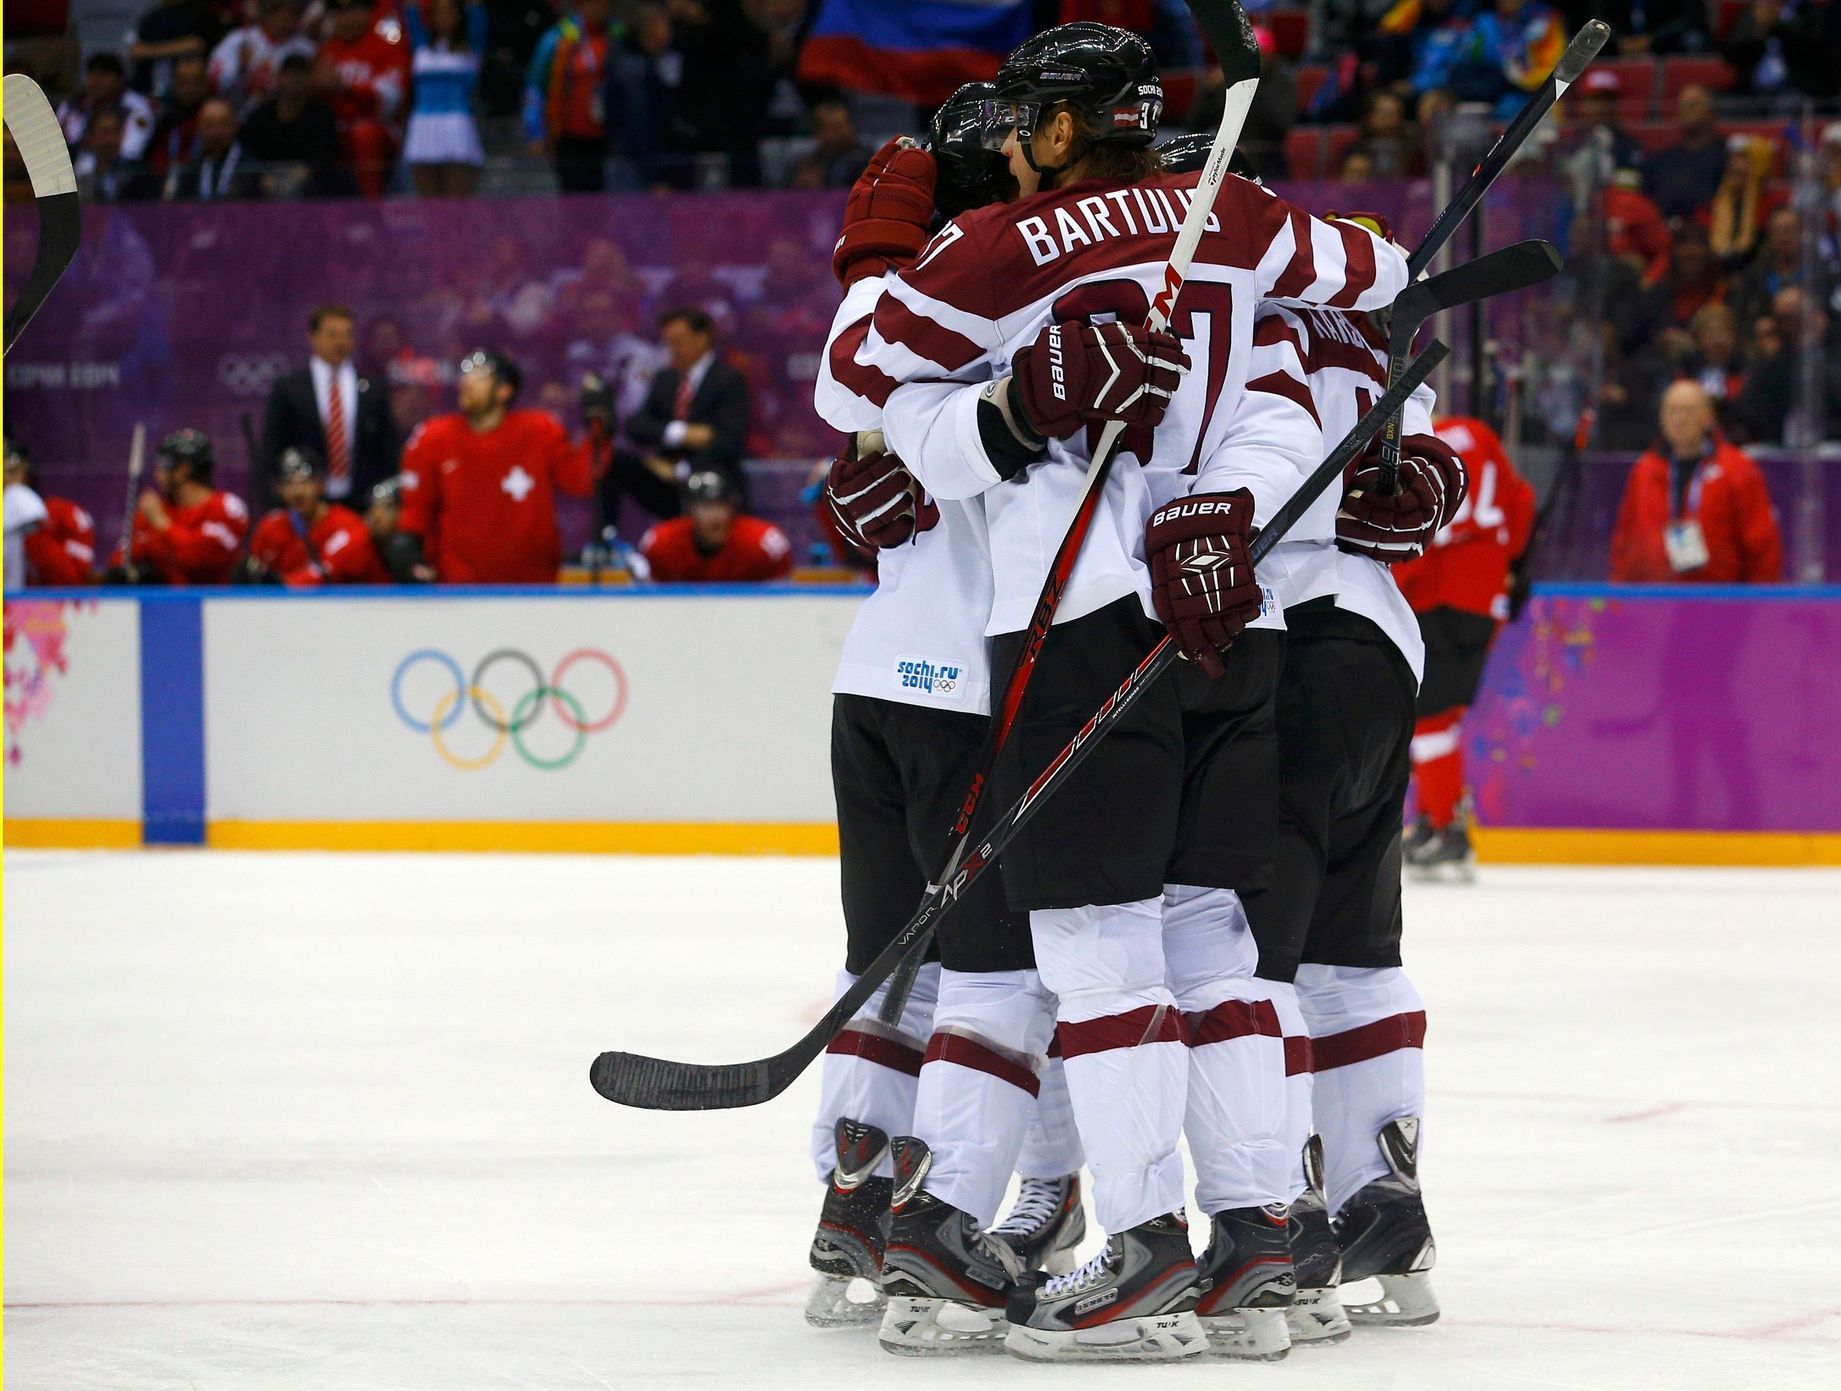 Soči 2014: Švýcarsko - Lotyšsko (hokej, osmifinále)